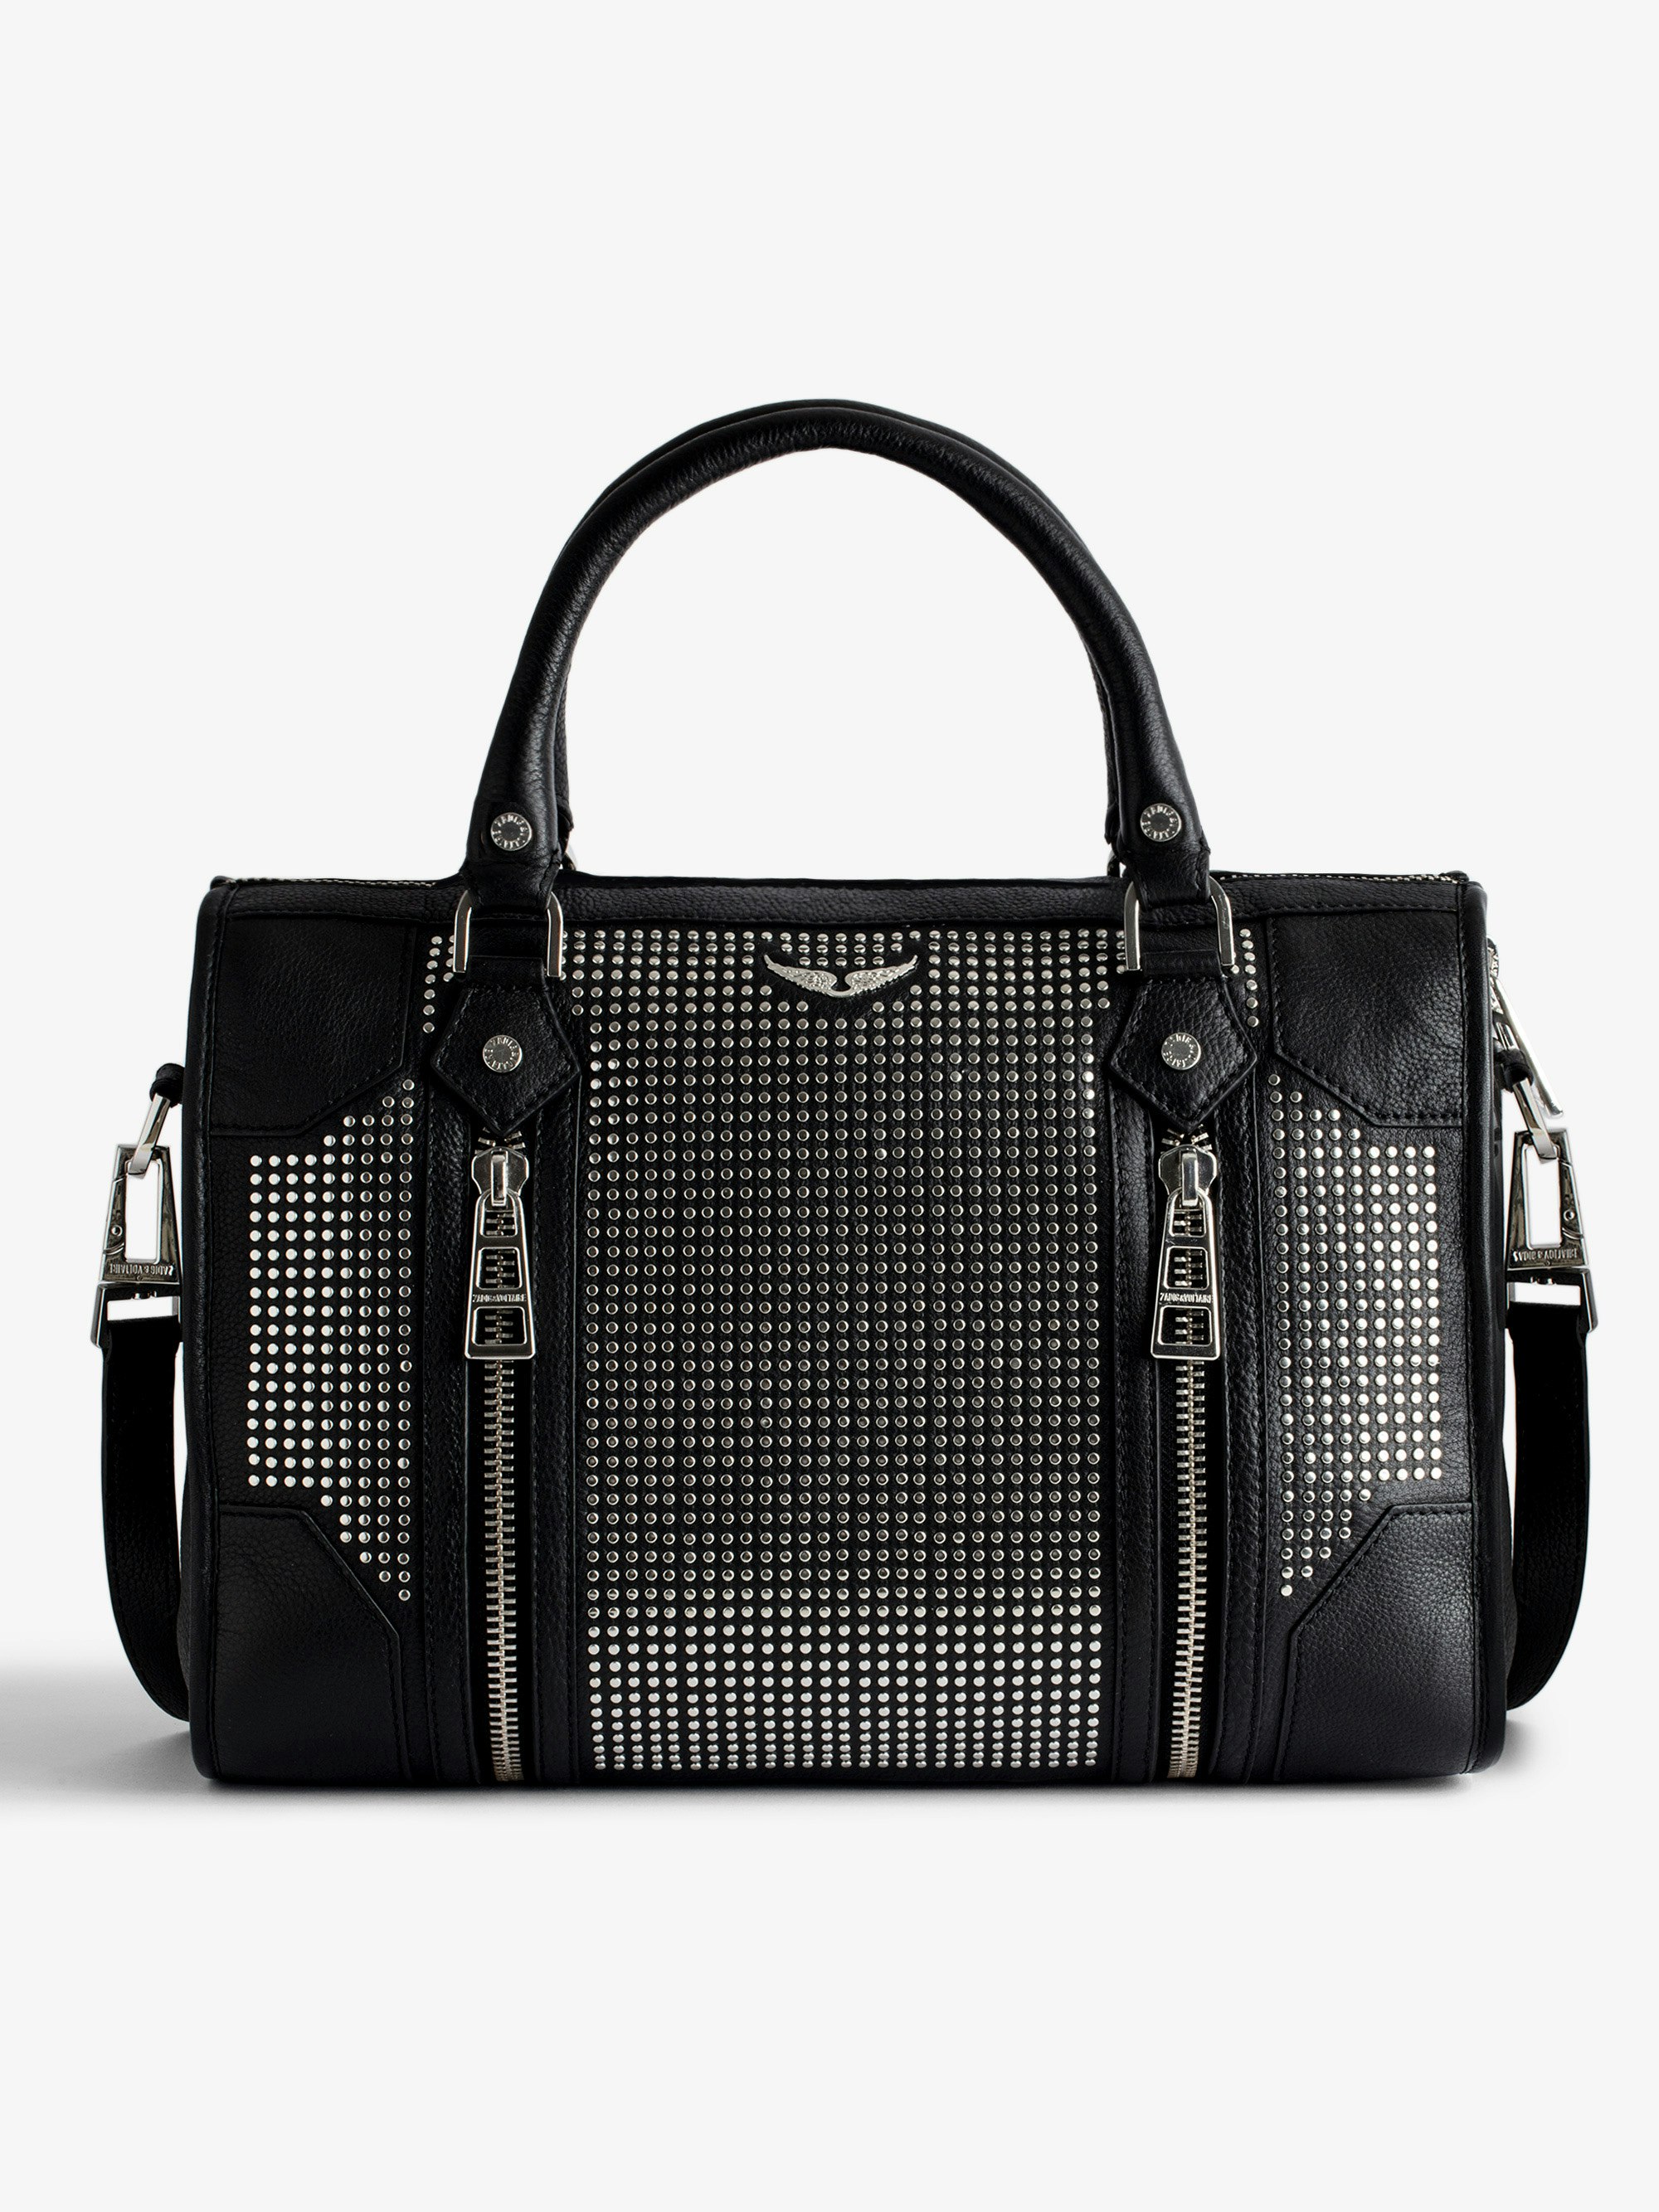 Tasche Sunny Medium #2 - Mittelgroße Damentasche mit Reißverschluss aus schwarzem Leder mit Nietenverzierung und Schulterriemen.